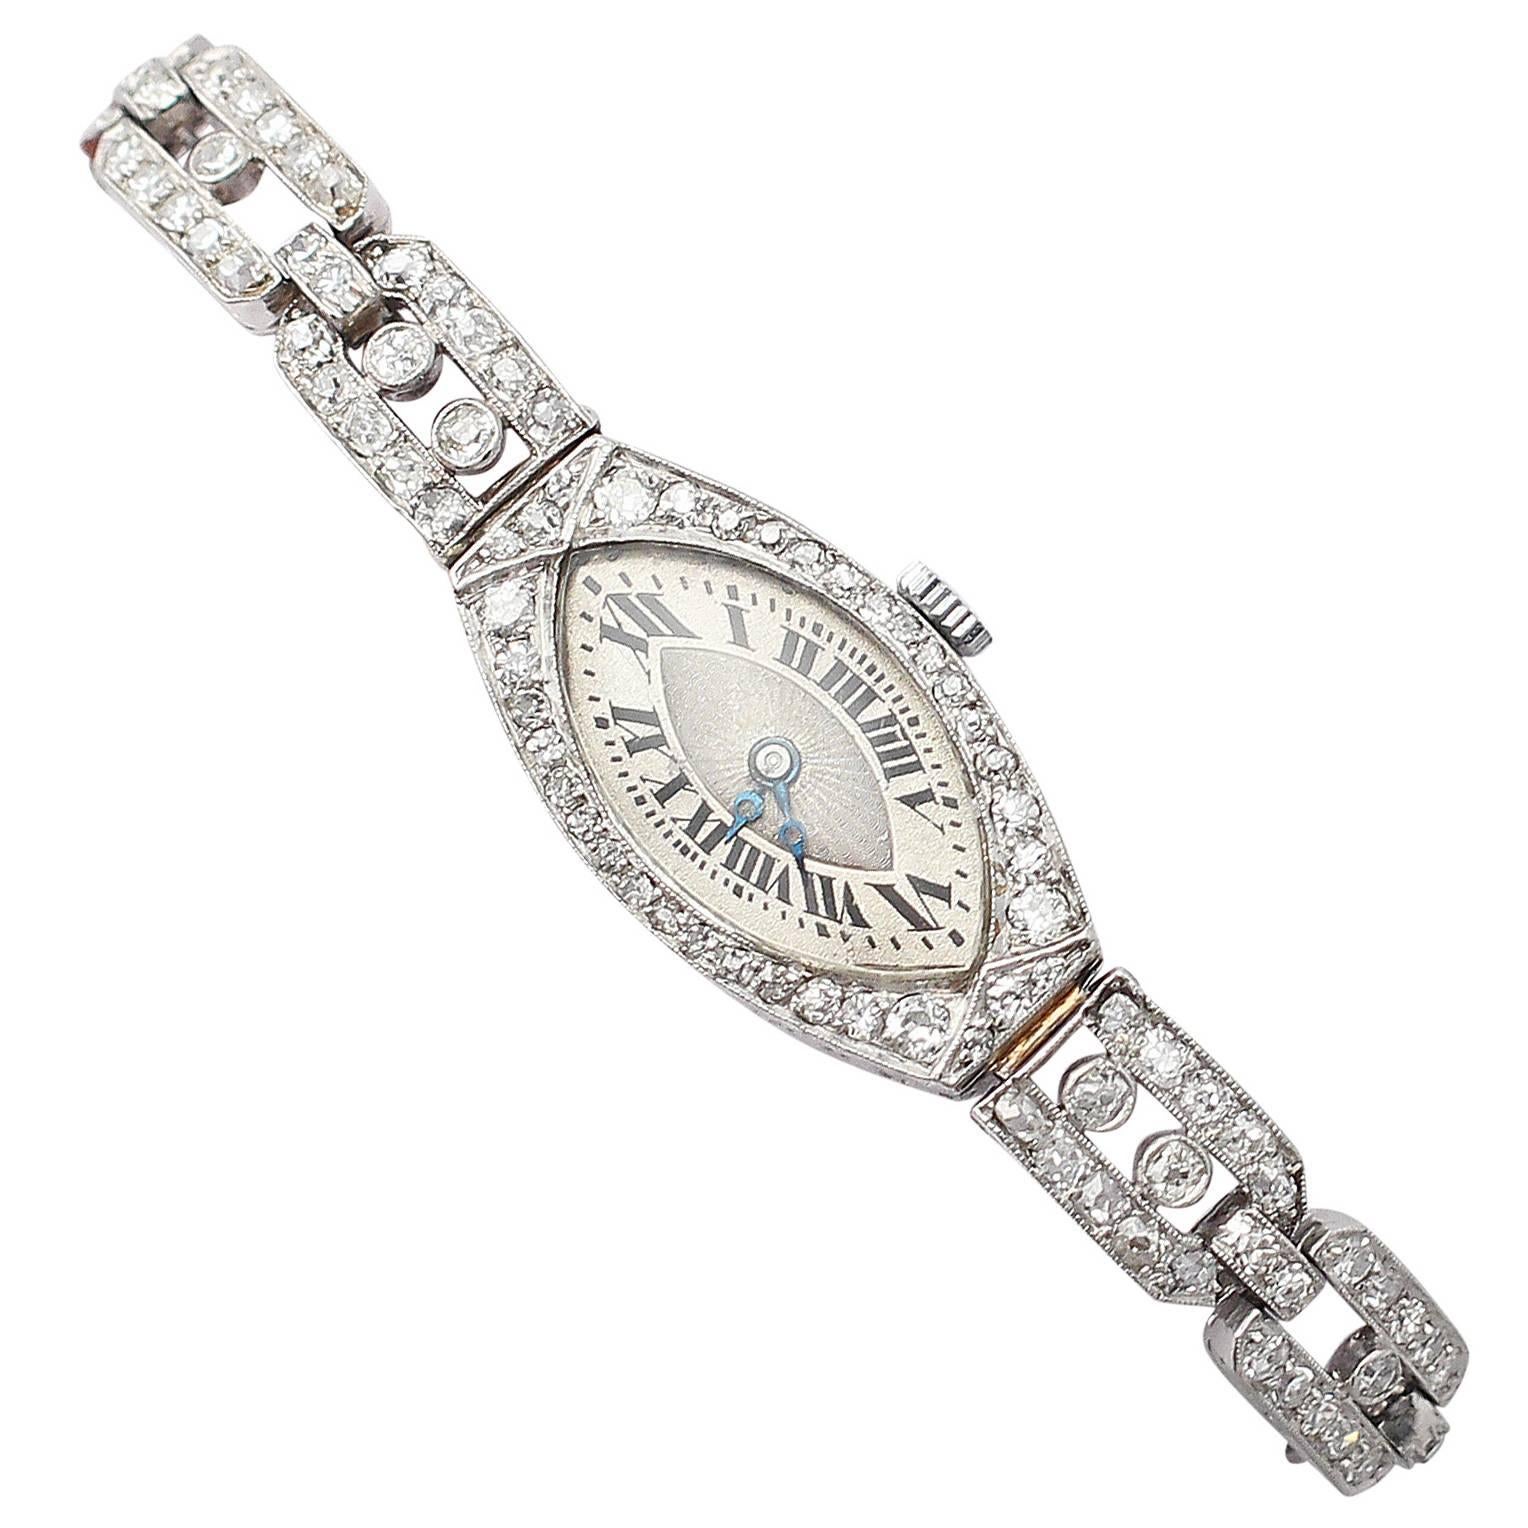 2.02Ct Diamond and Platinum Ladies Cocktail Watch - Antique Circa 1930